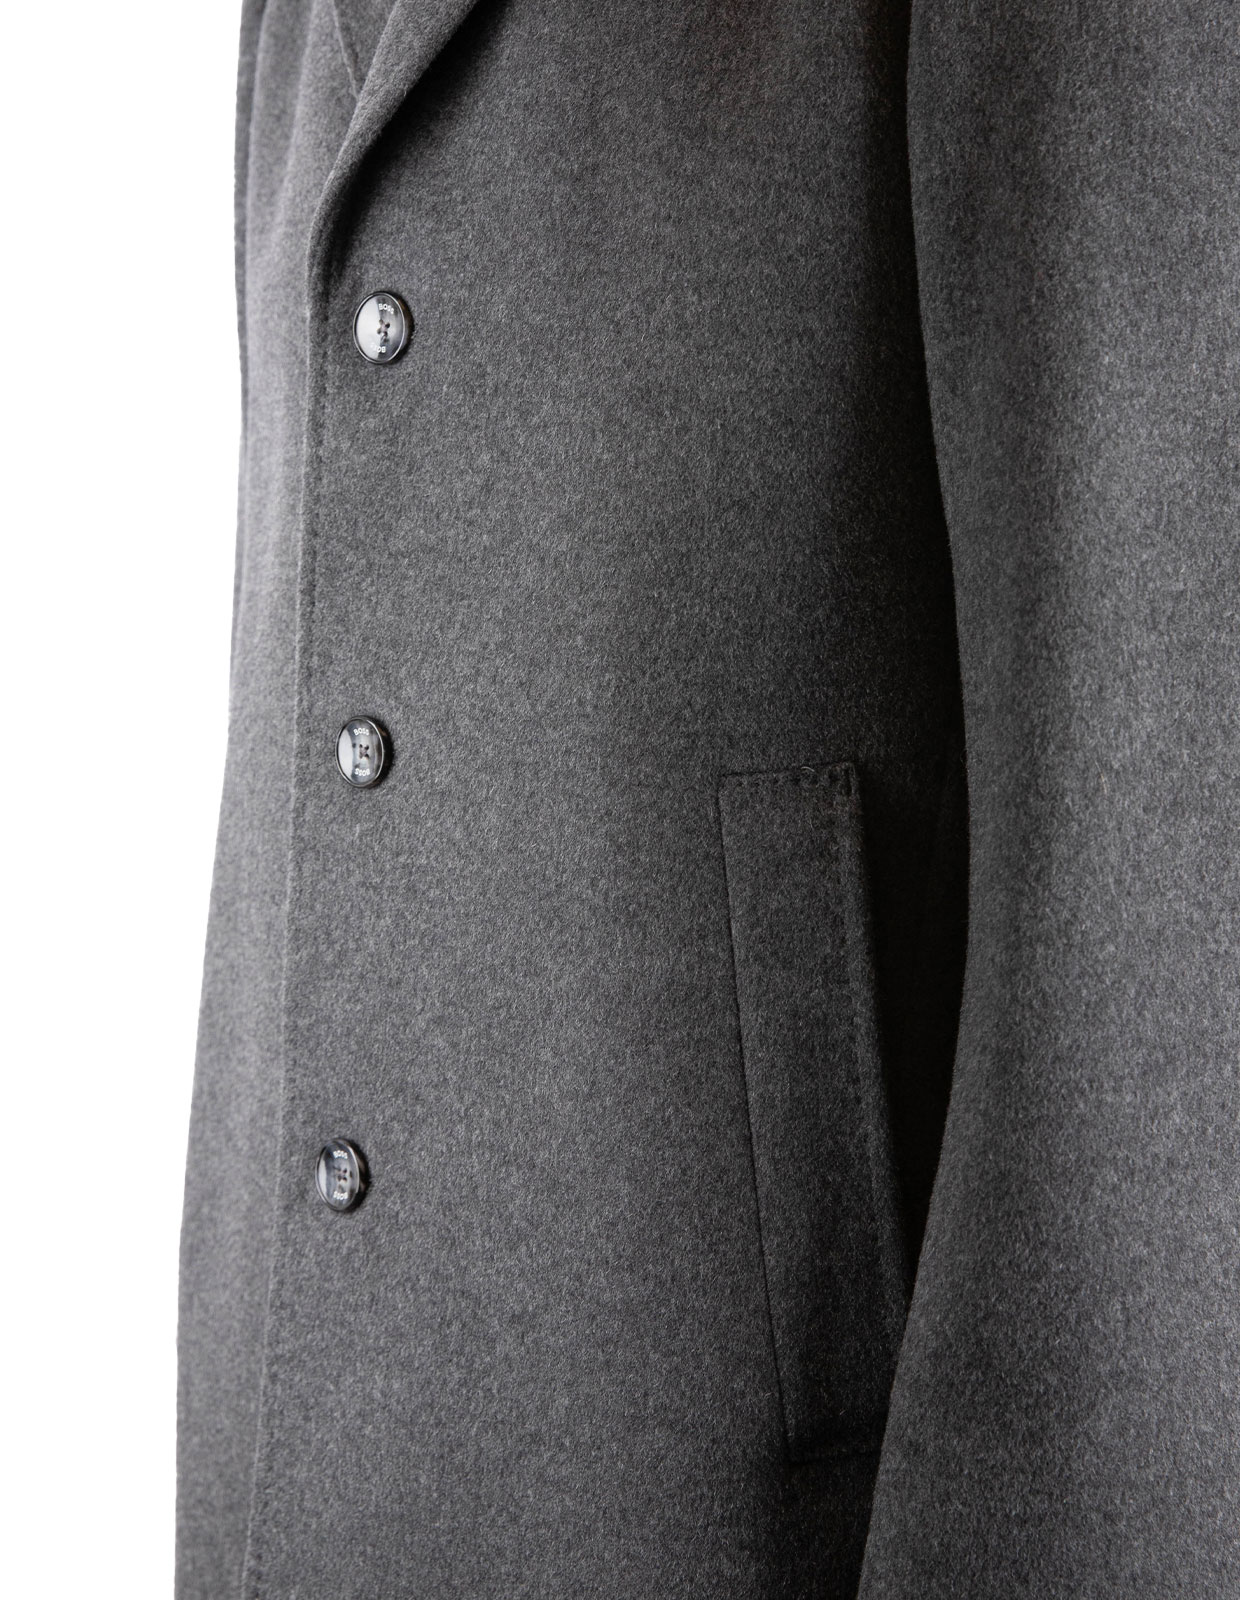 H-Jared Coat Wool Cashmere Medium Grey